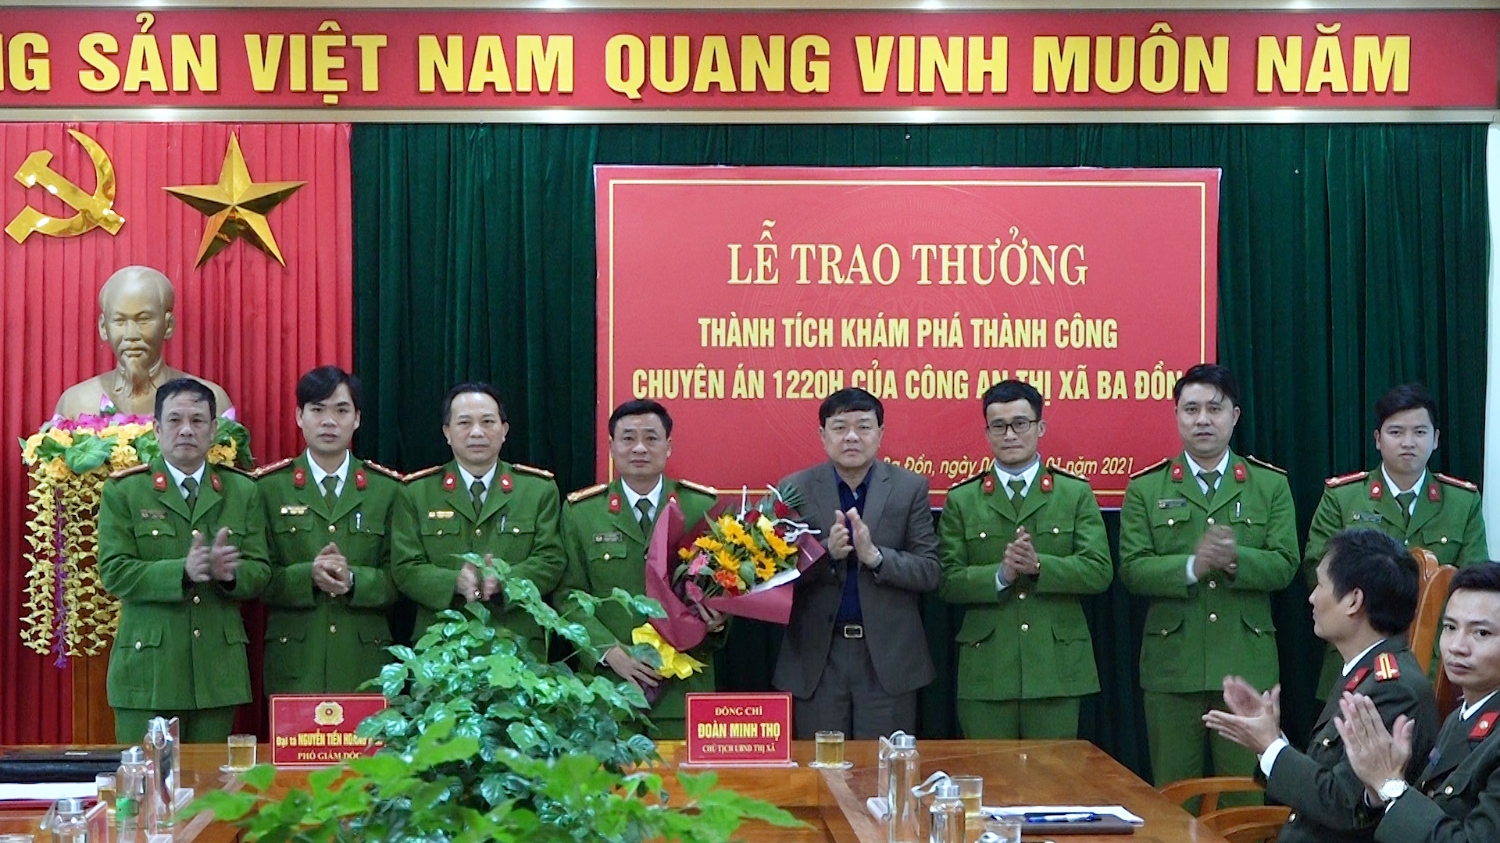 Đồng chí Đoàn Minh Thọ Phó bí thư Thị ủy Chủ tịch UBND thị xã đã trao hoa và tiền thưởng cho các cán bộ, chiến sỹ trong Ban chuyên án của công an thị xã Ba Đồn